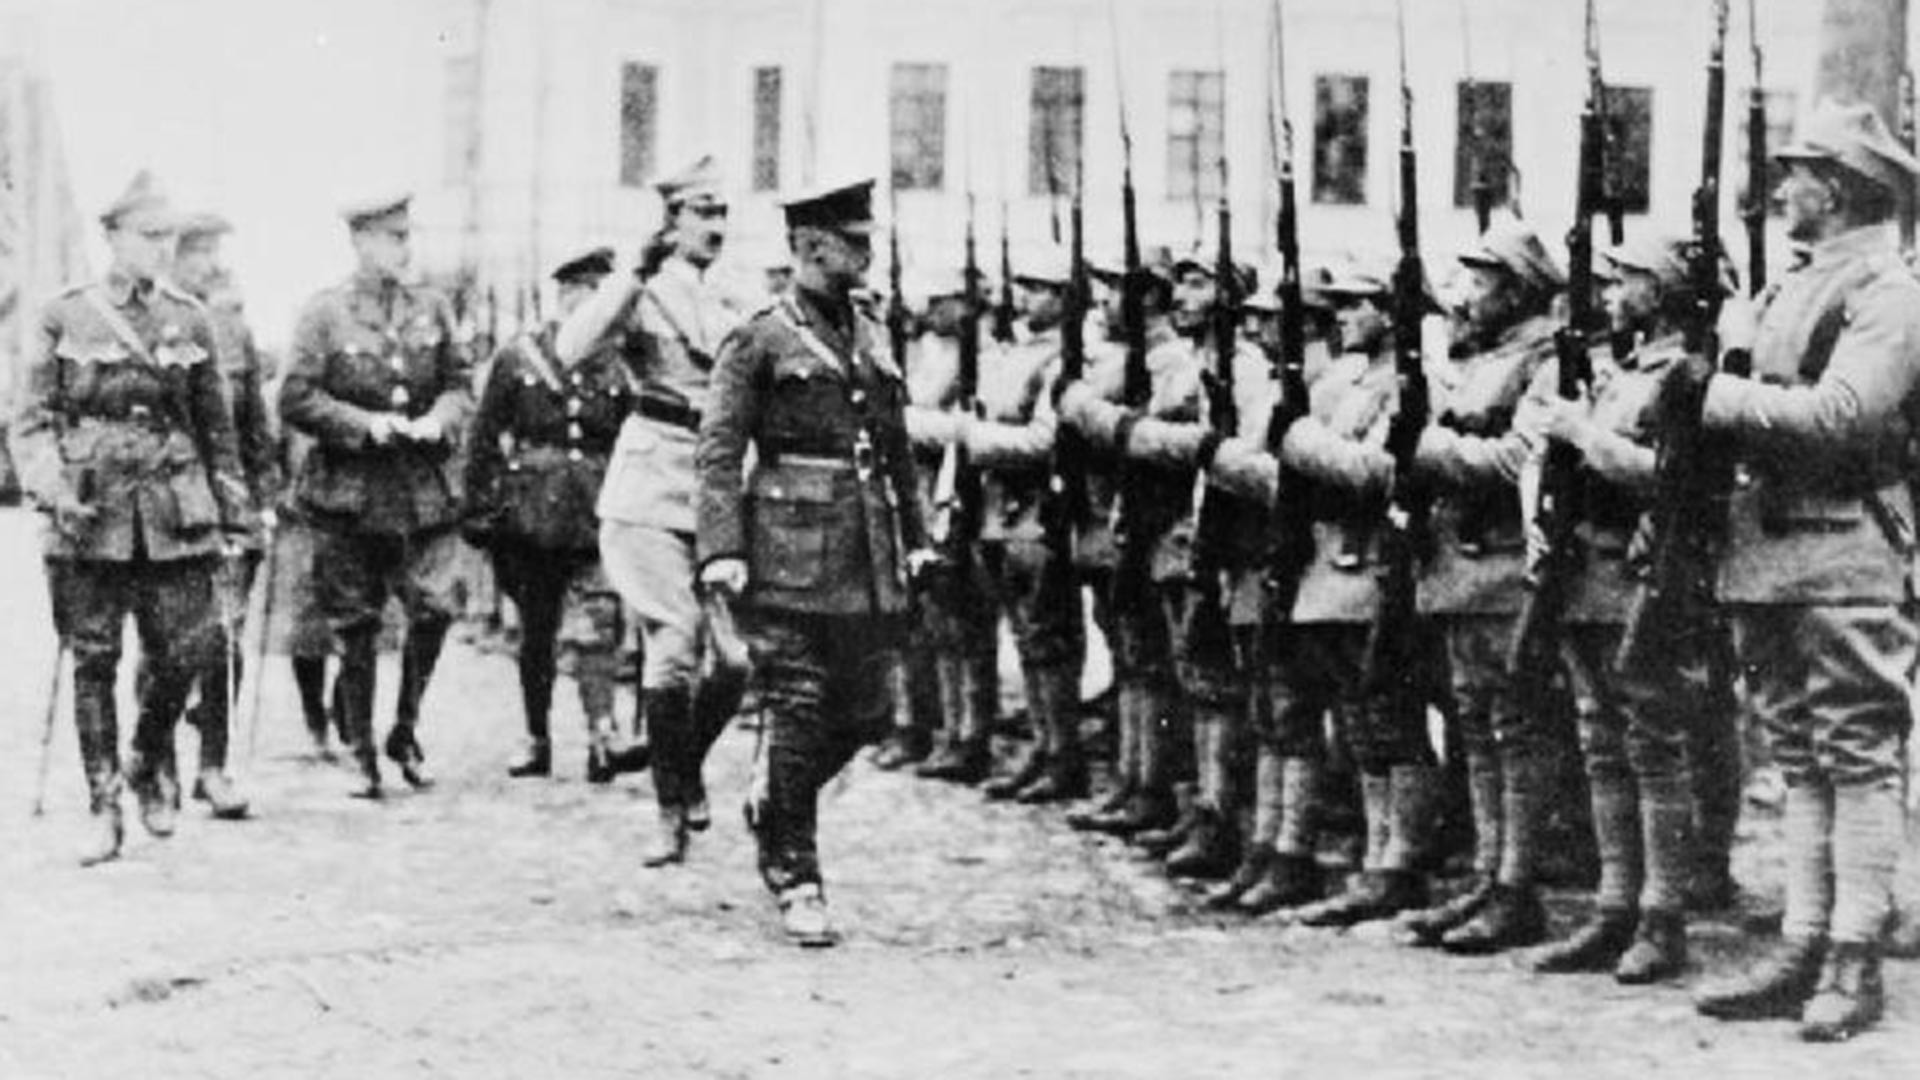 Officiers polonais, britanniques et français inspectant un détachement de troupes polonaises du bataillon dit de Mourmansk avant leur départ pour le front. Arkhangelsk, 1919